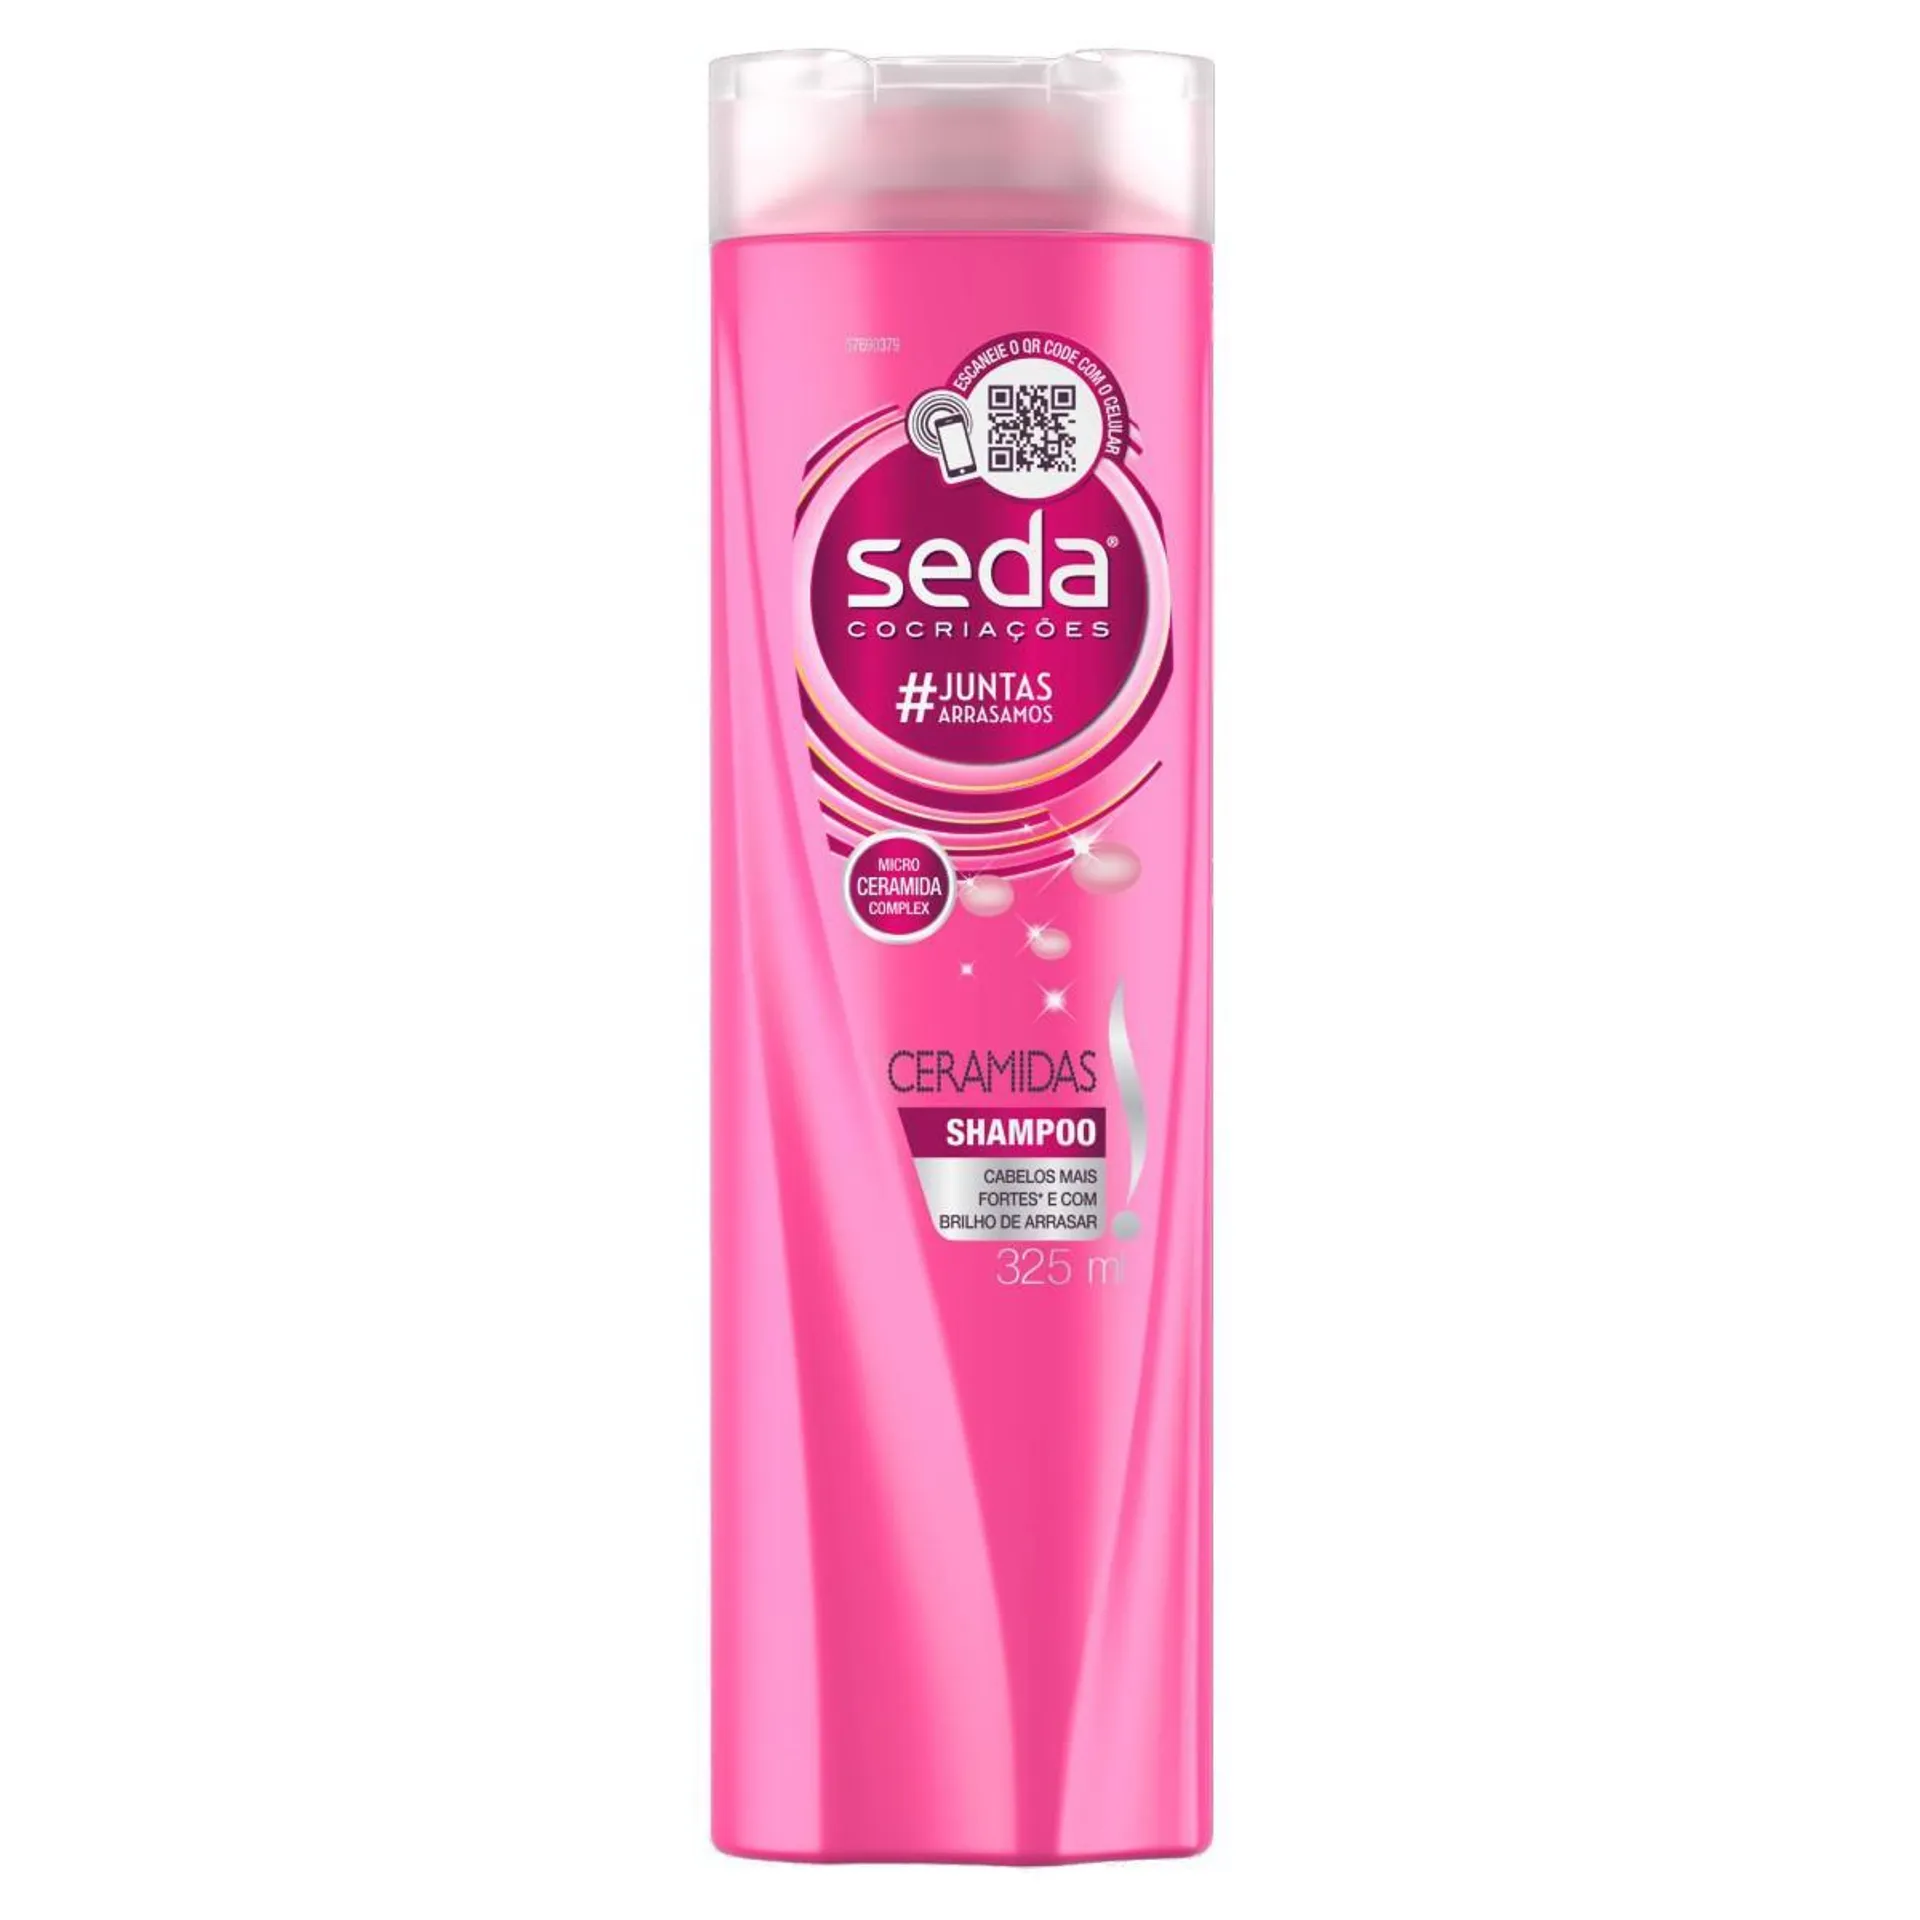 Shampoo Seda Cocriações Ceramidas Frasco 325ml